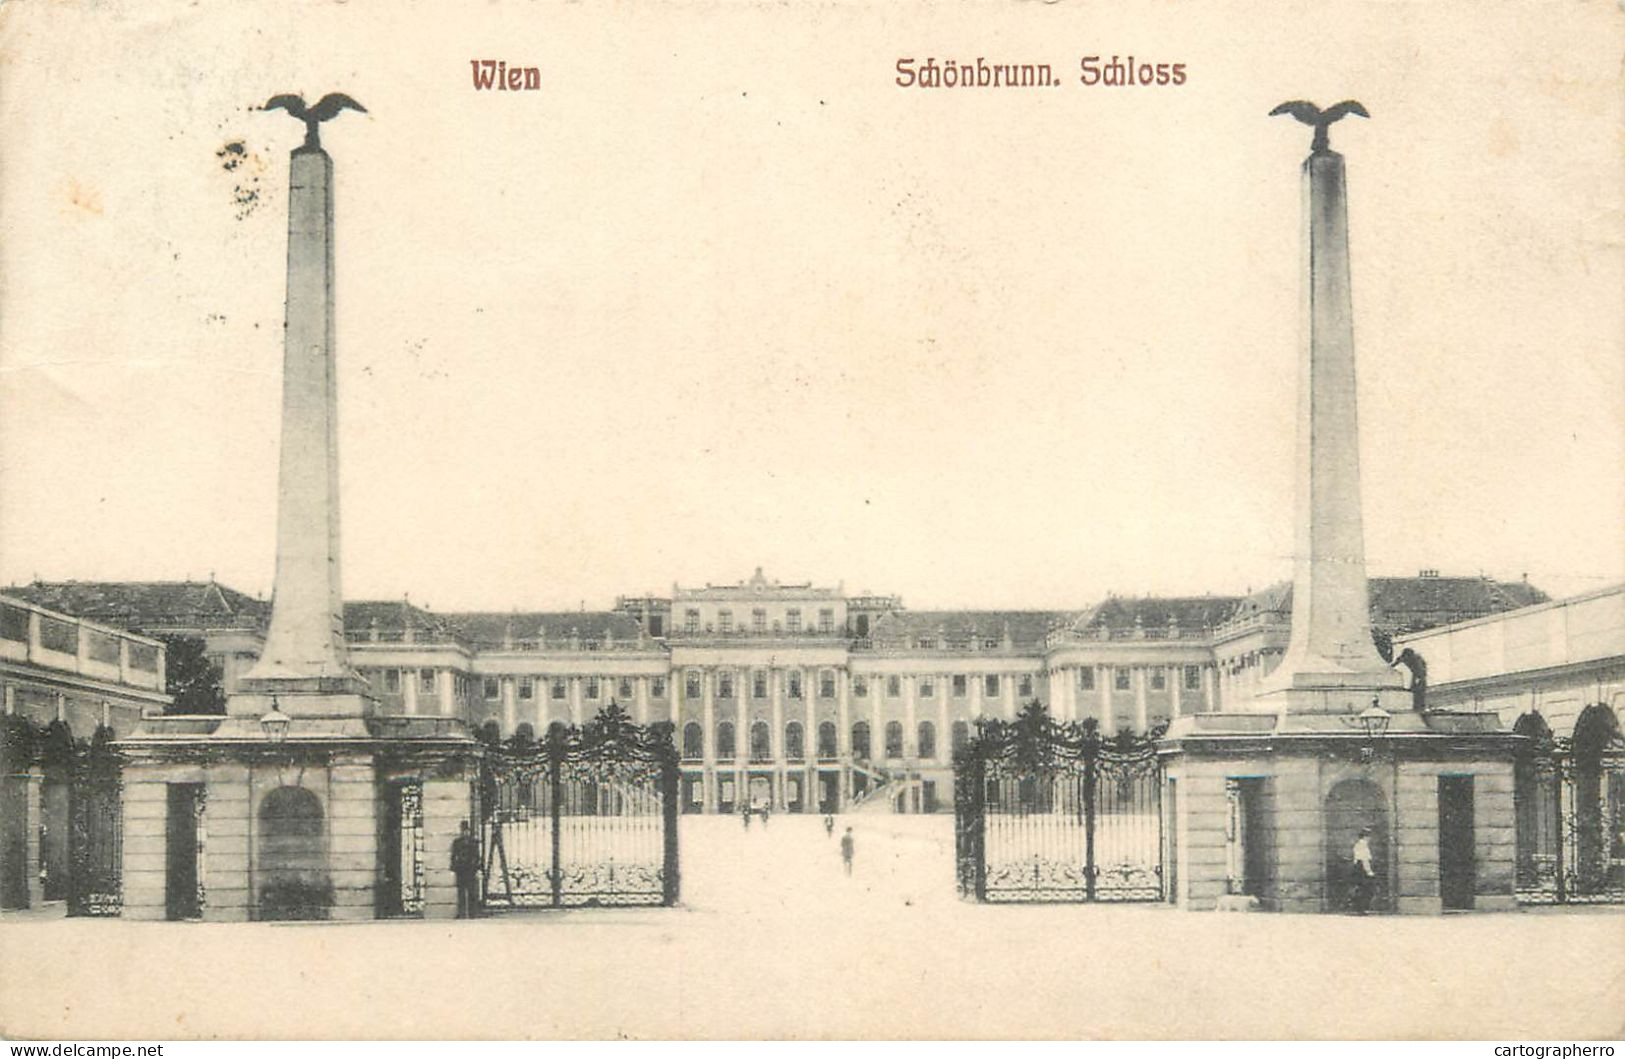 Postcard Austria Wien Schonbrunn Palace - Schönbrunn Palace